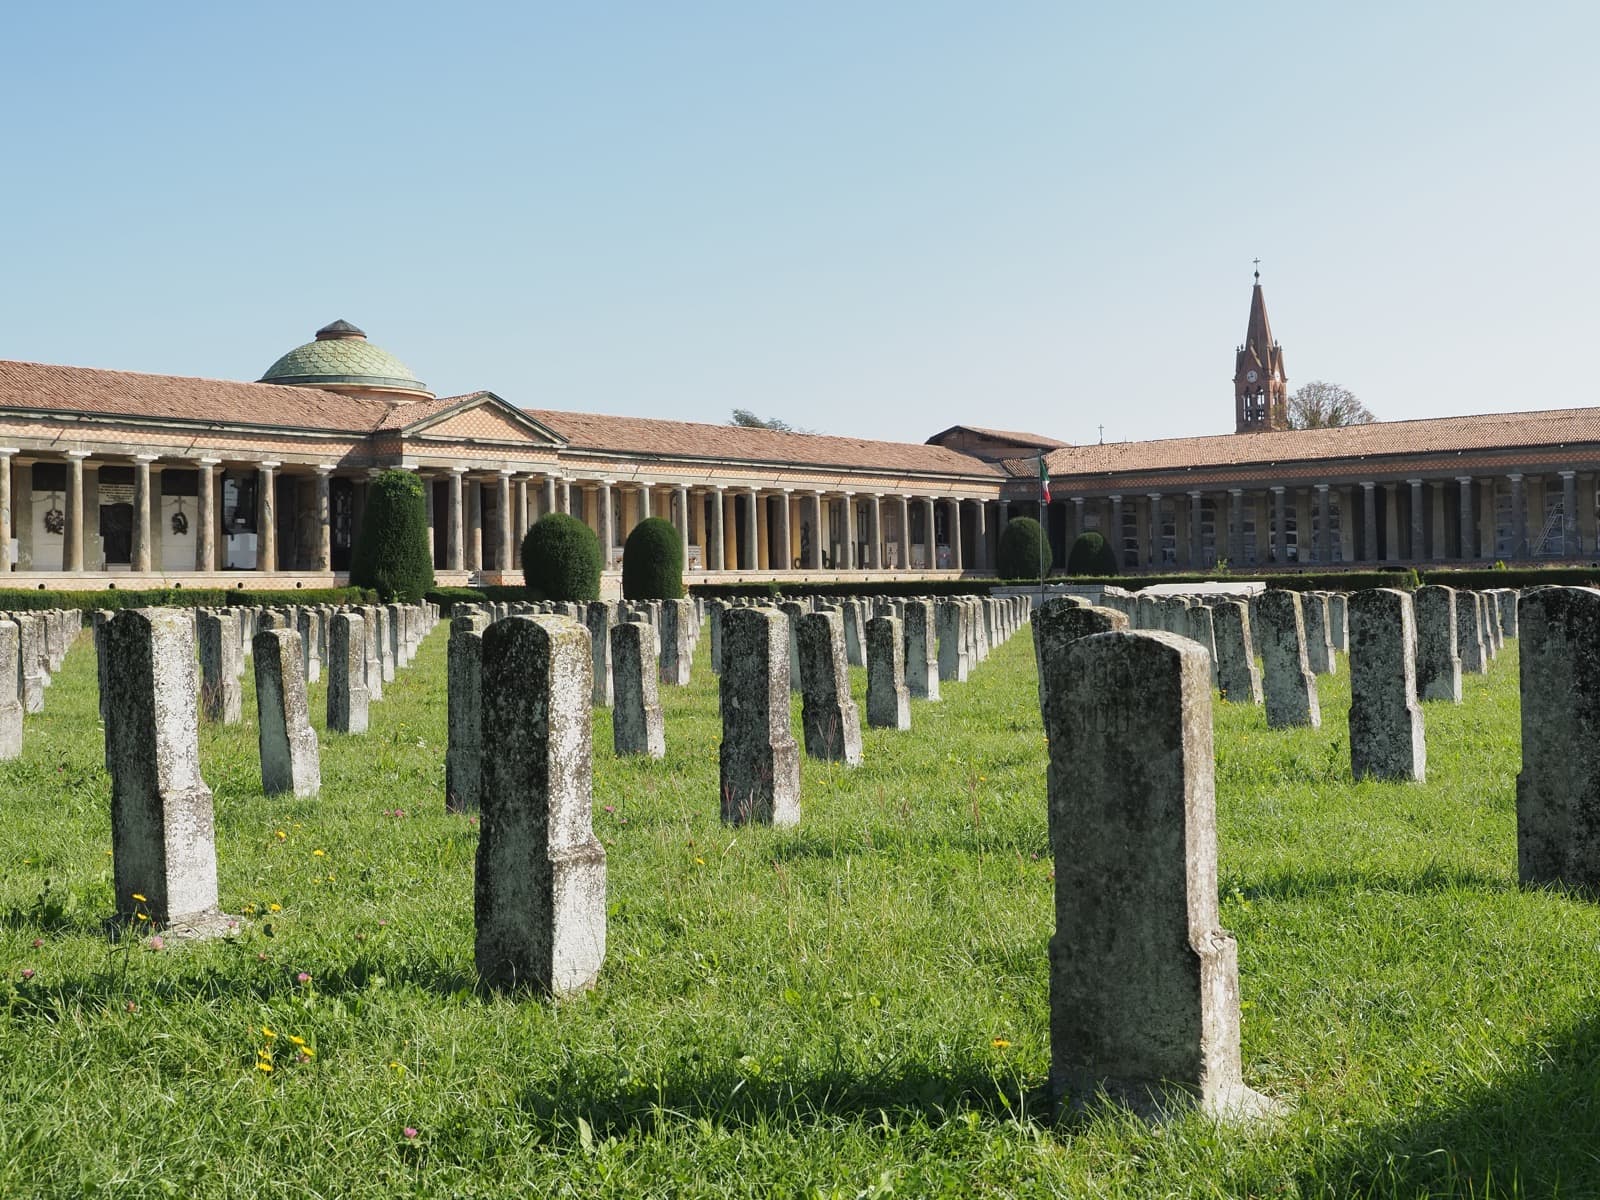 Cimitero storico monumentale di San Cataldo, Modena Ph. Gaia Conventi via shutterstock